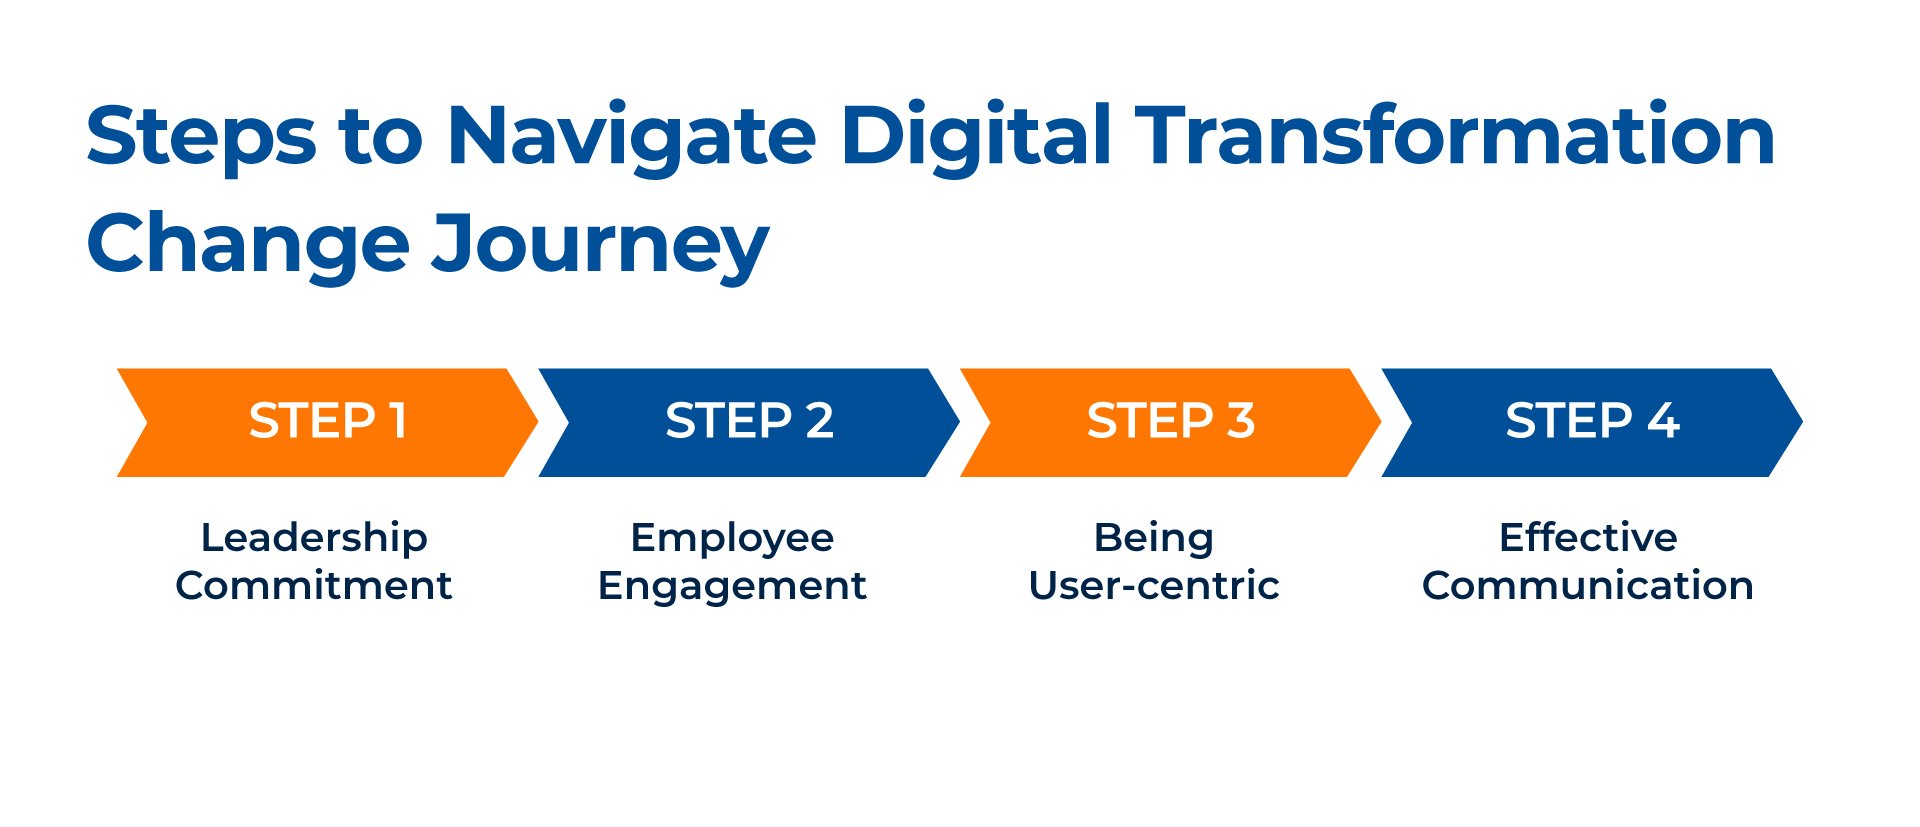 Steps to navigate digital transformation journey_Kanerika
